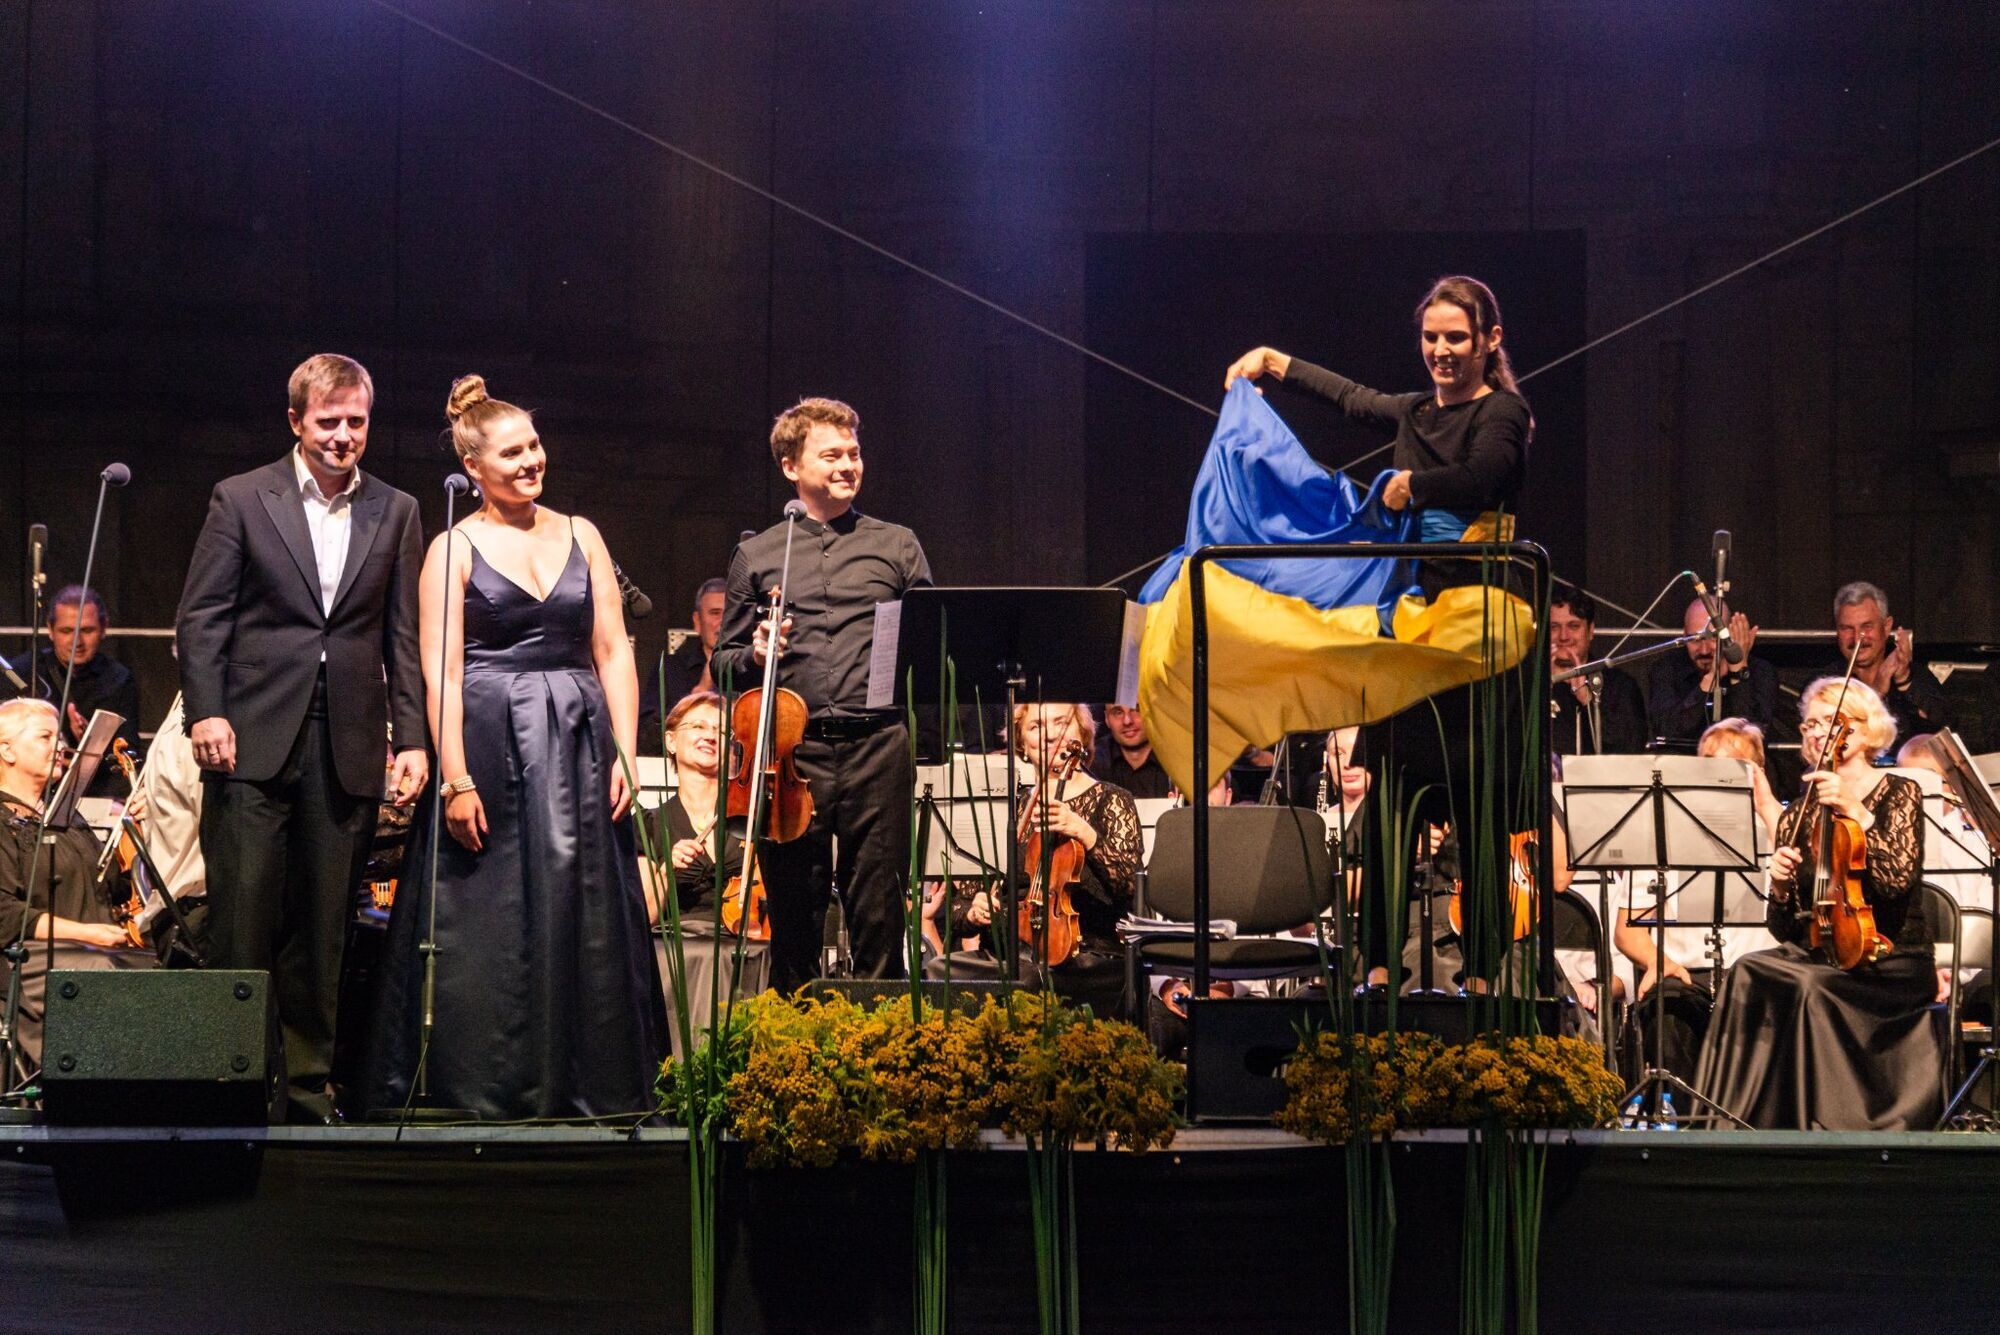 Війна? Ні, не чули. Українська диригентка Оксана Линів виступить у Дрездені з російською оперою